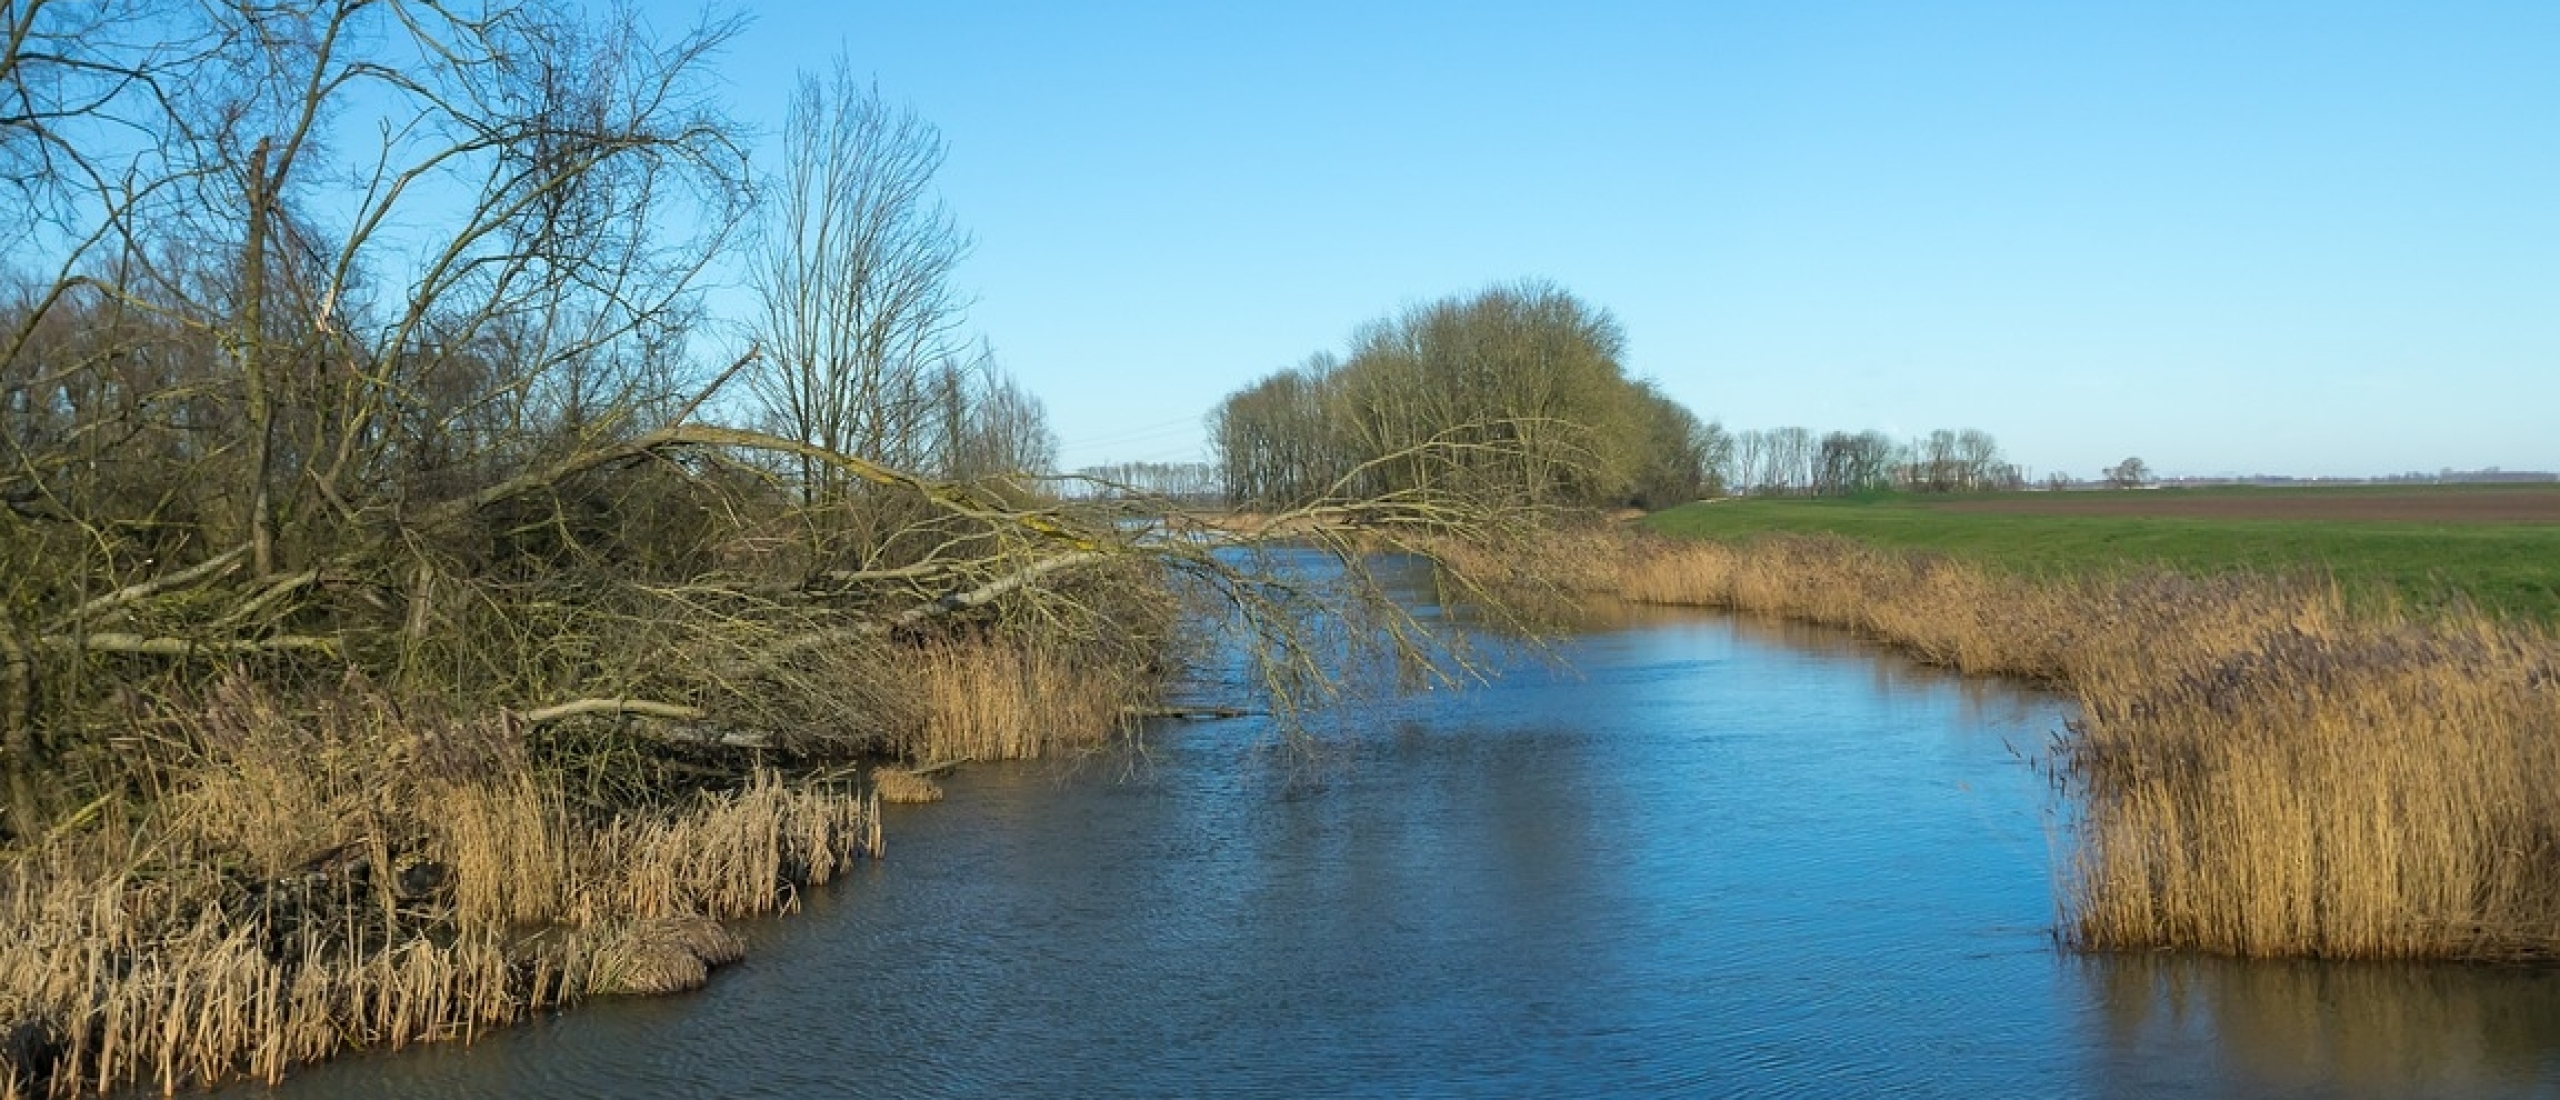 Biesbosch